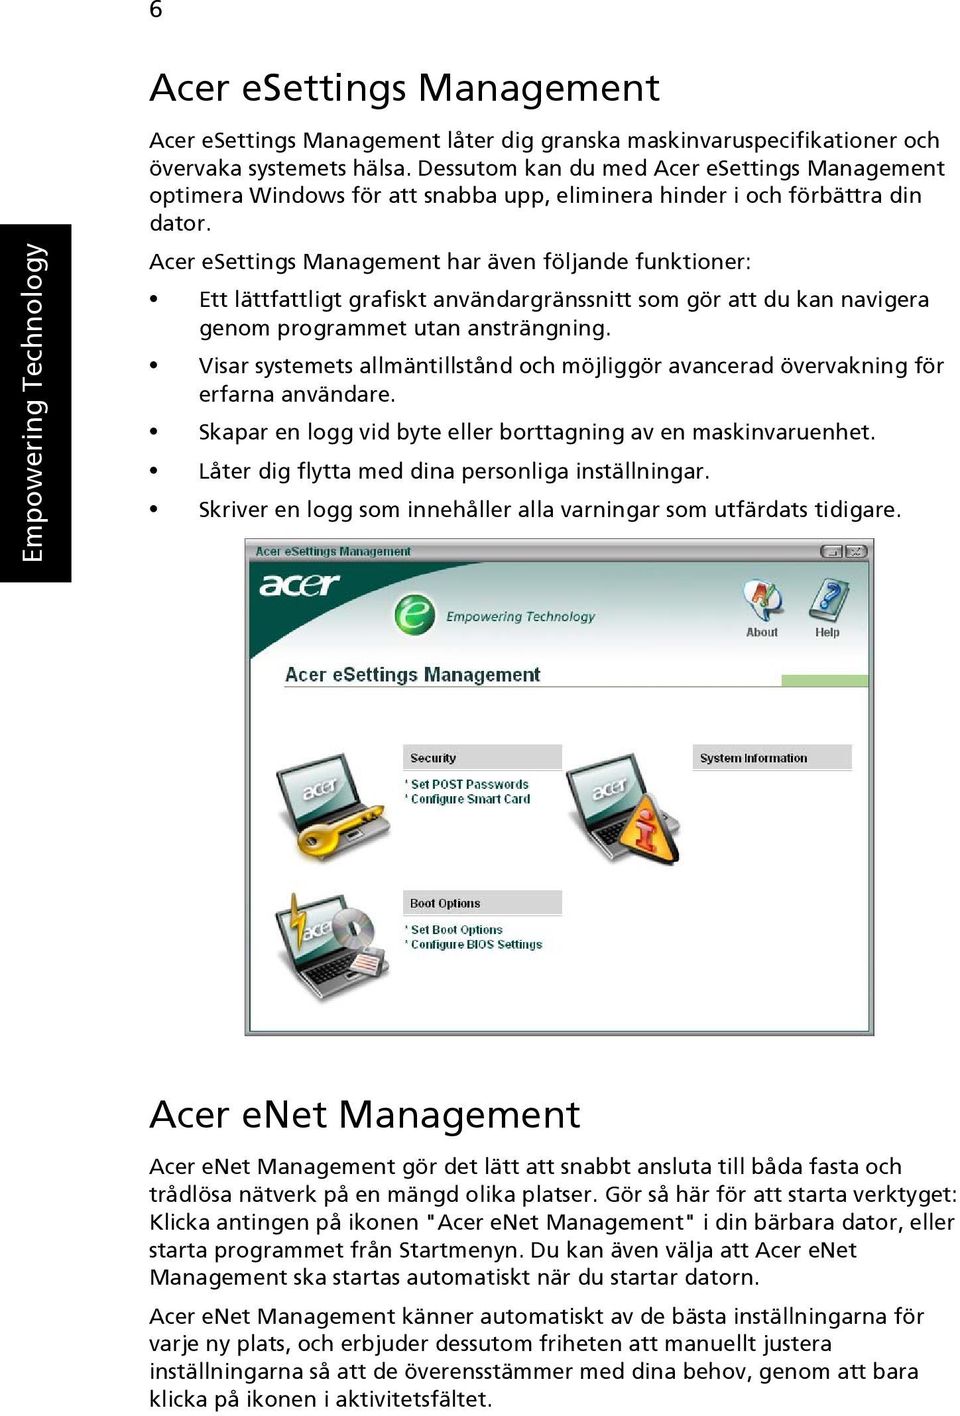 Acer esettings Management har även följande funktioner: Ett lättfattligt grafiskt användargränssnitt som gör att du kan navigera genom programmet utan ansträngning.